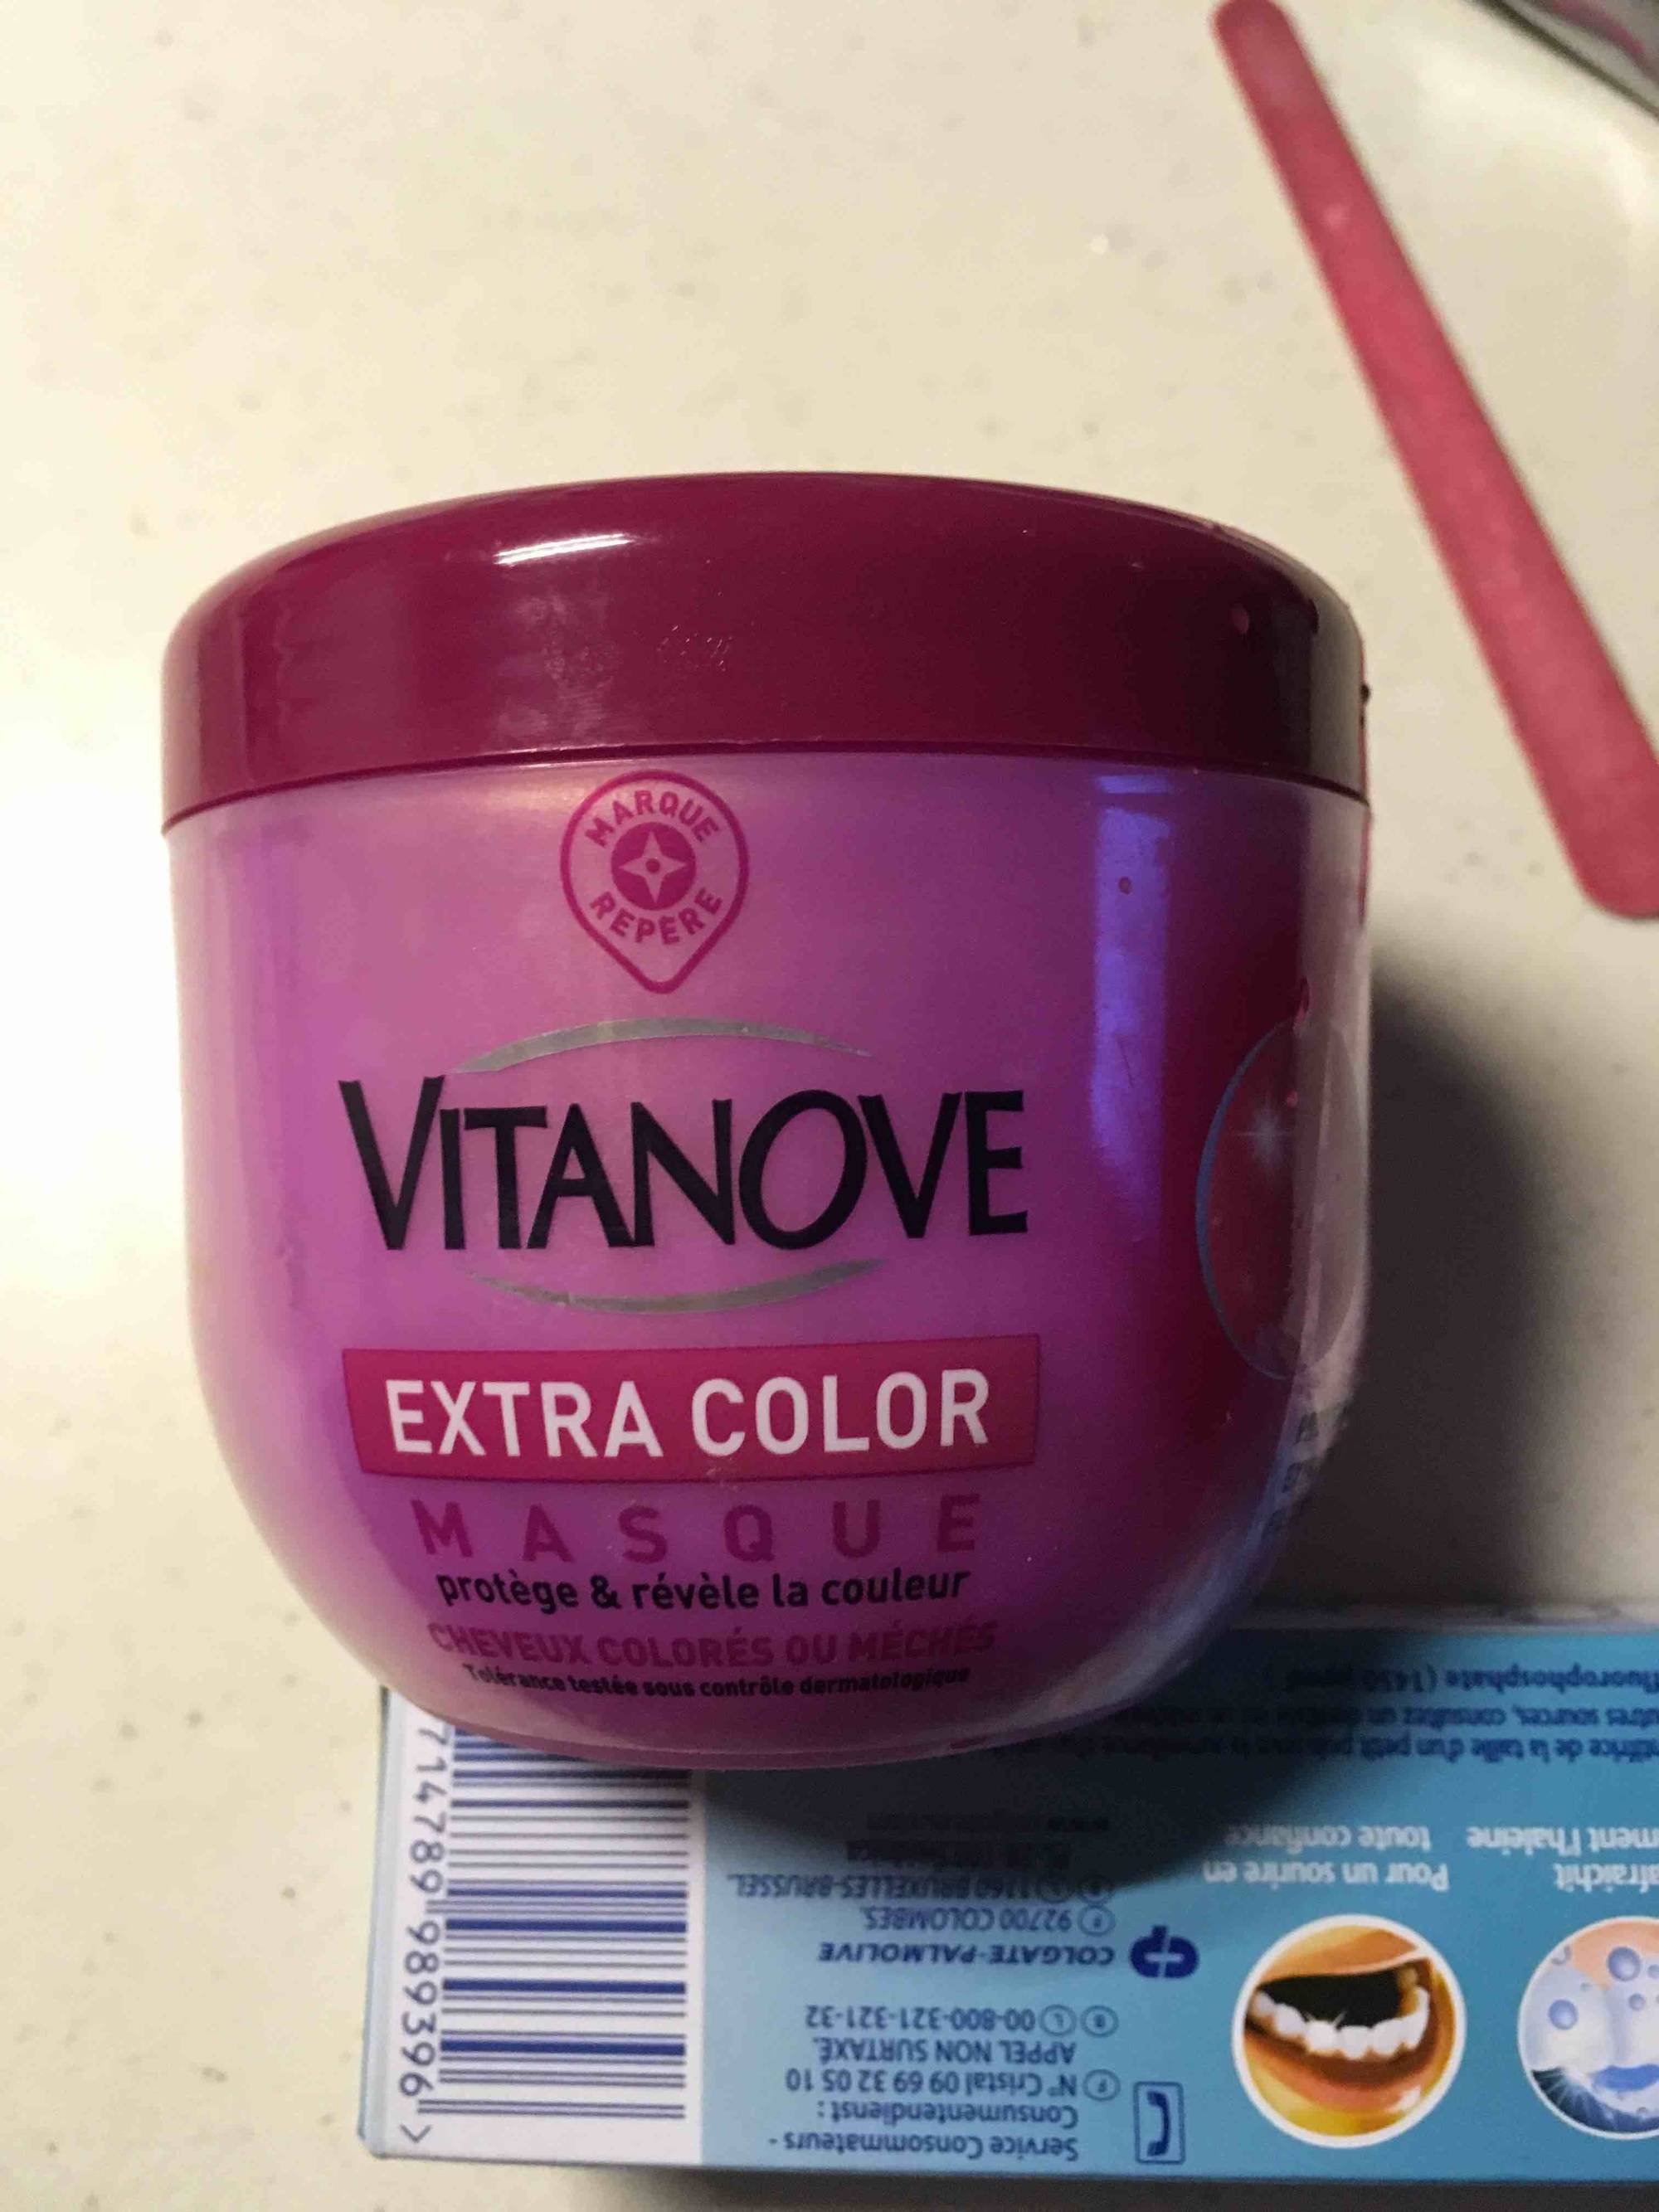 MARQUE REPÈRE - Vitanove extra color - Masque protège & révèle la couleur